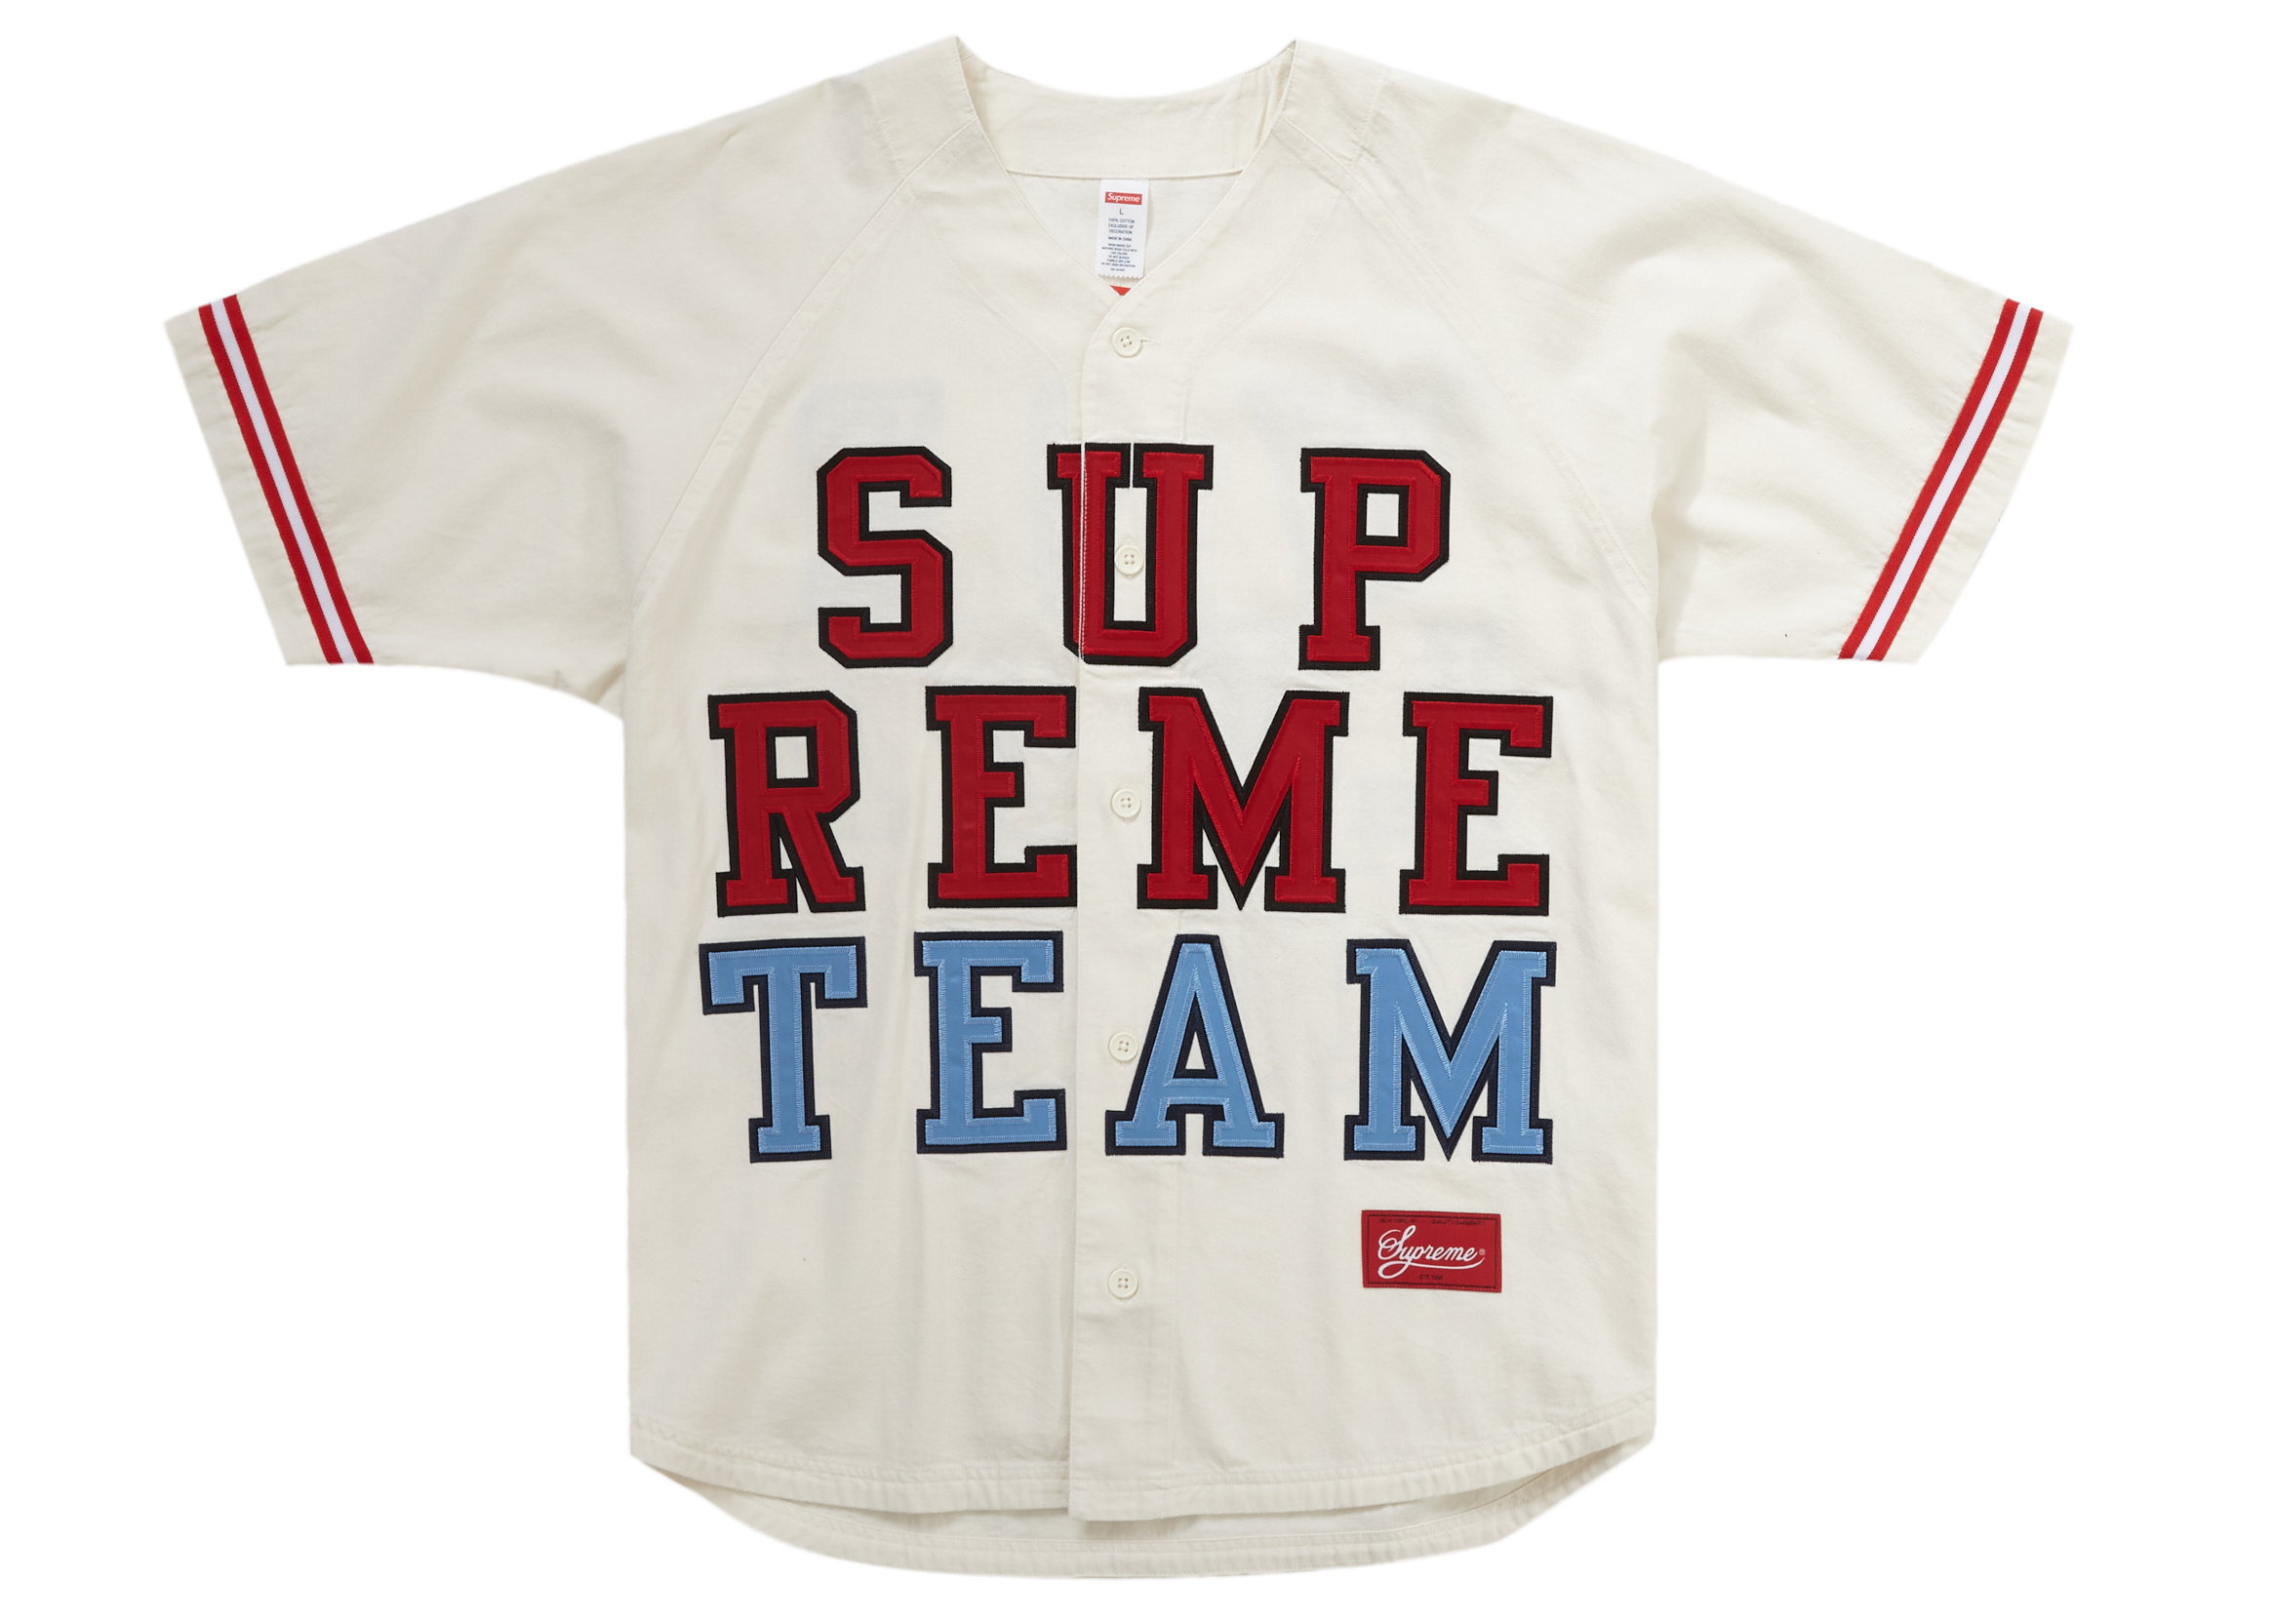 【新品】supreme baseball jersey